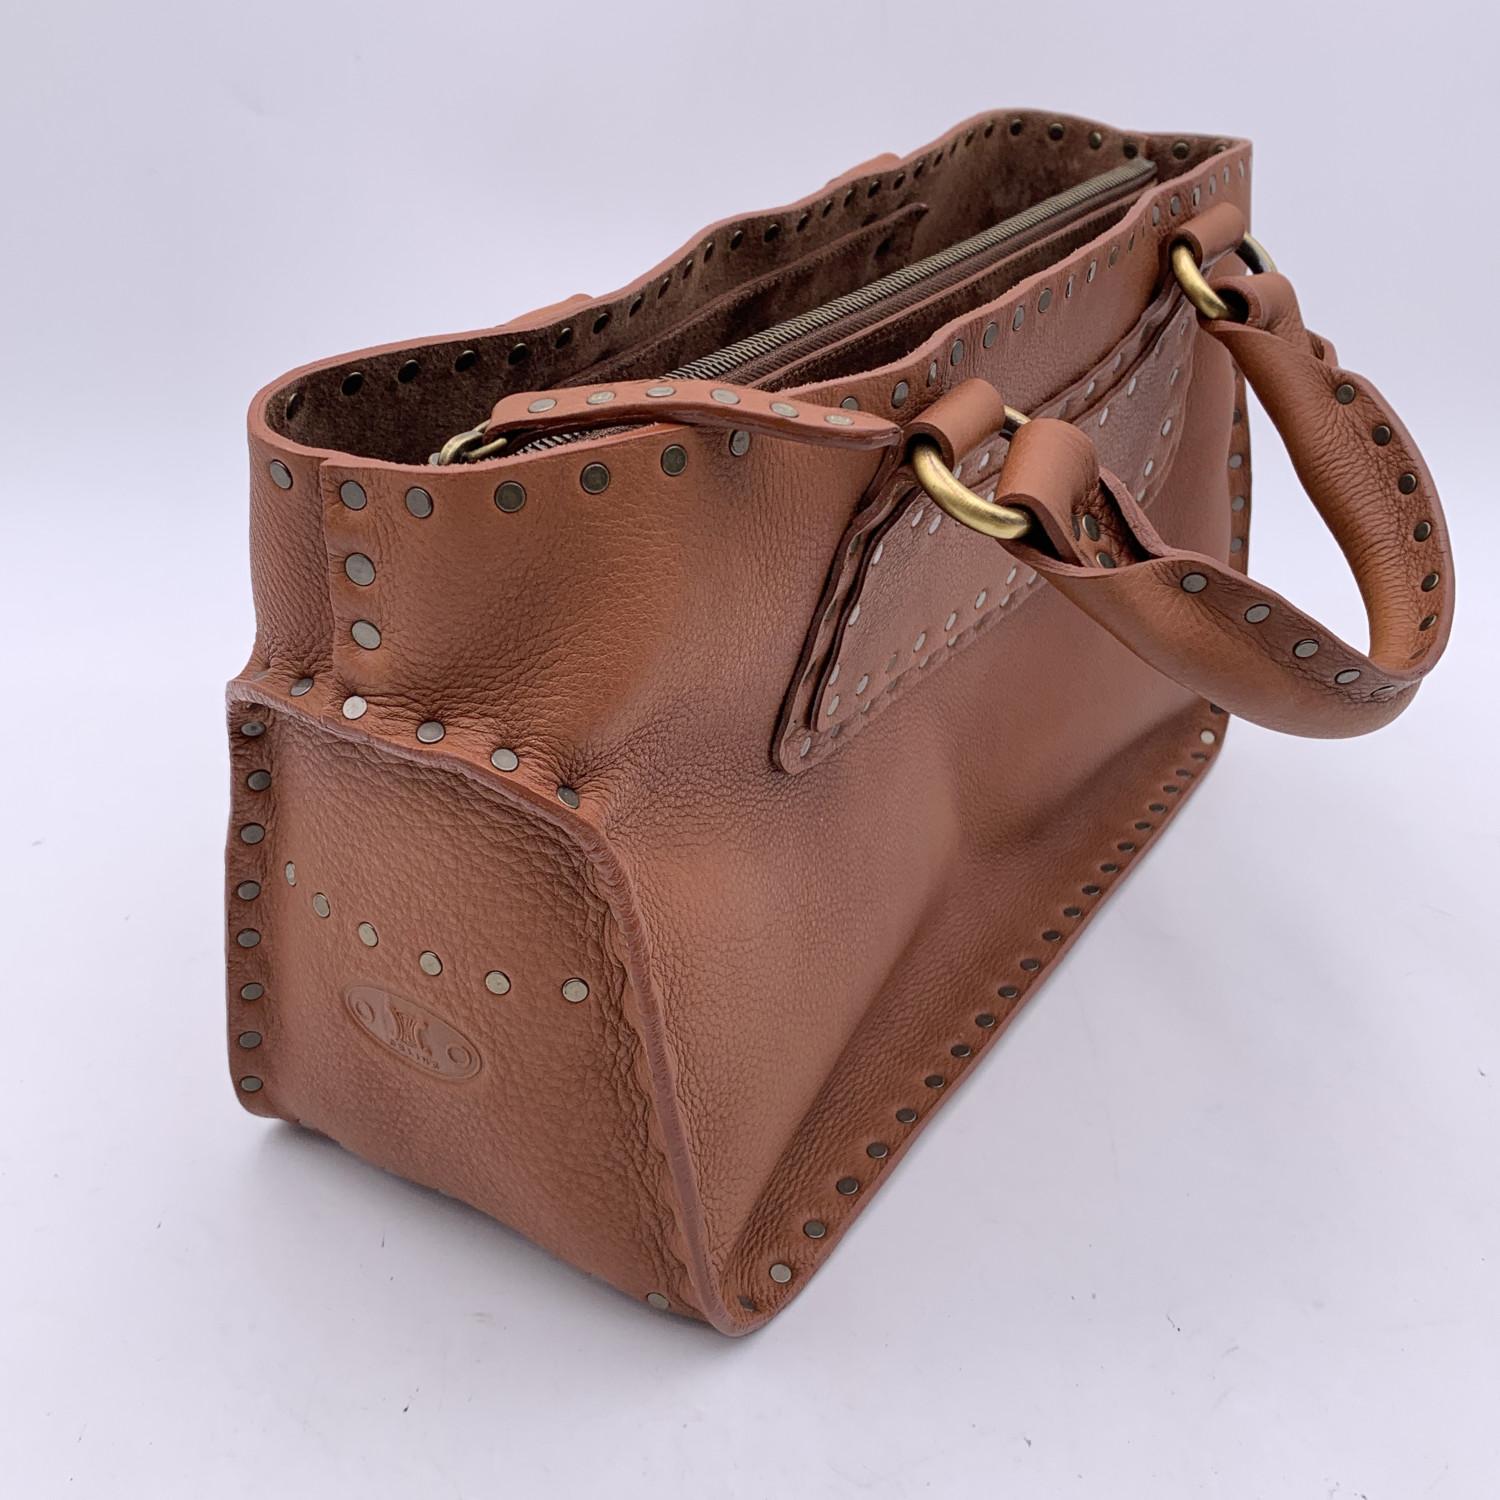 Celine Brown Leather Studded Boogie Bag Satchel Tote Handbag 3